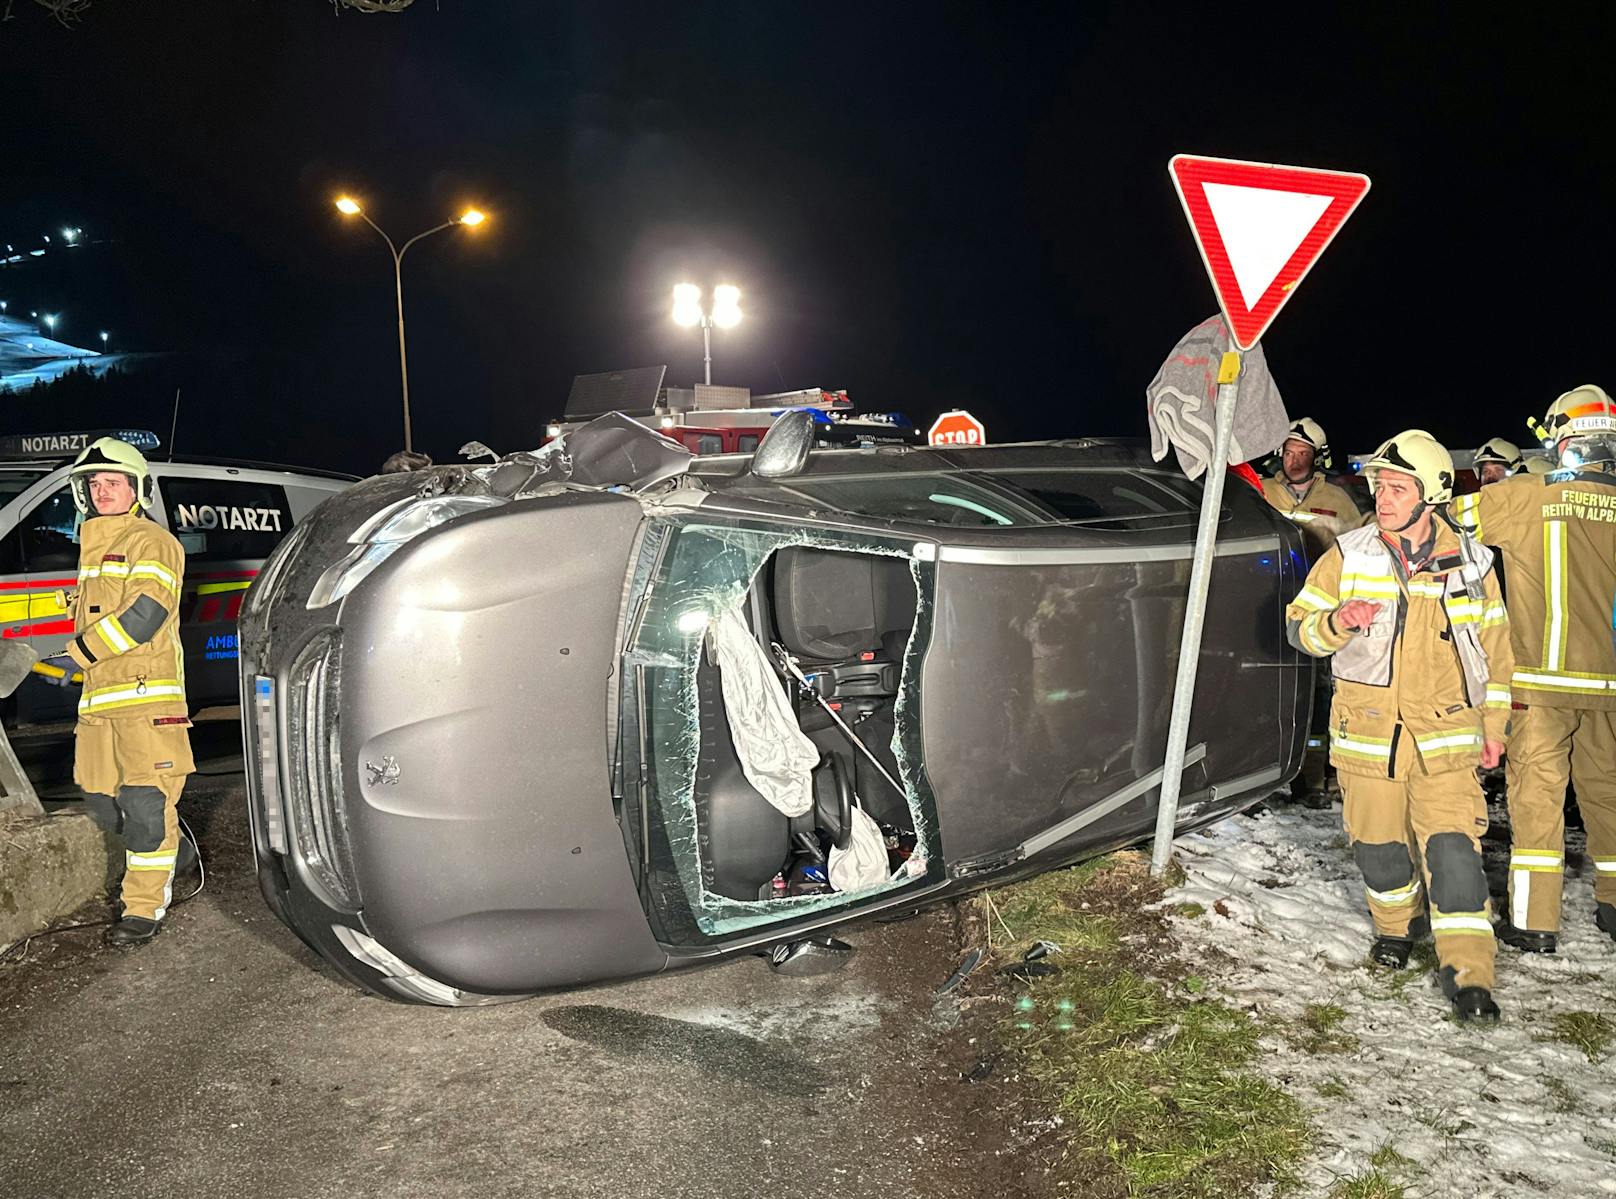 Autofahrerin nach Crash in Peugeot-Wrack gefangen